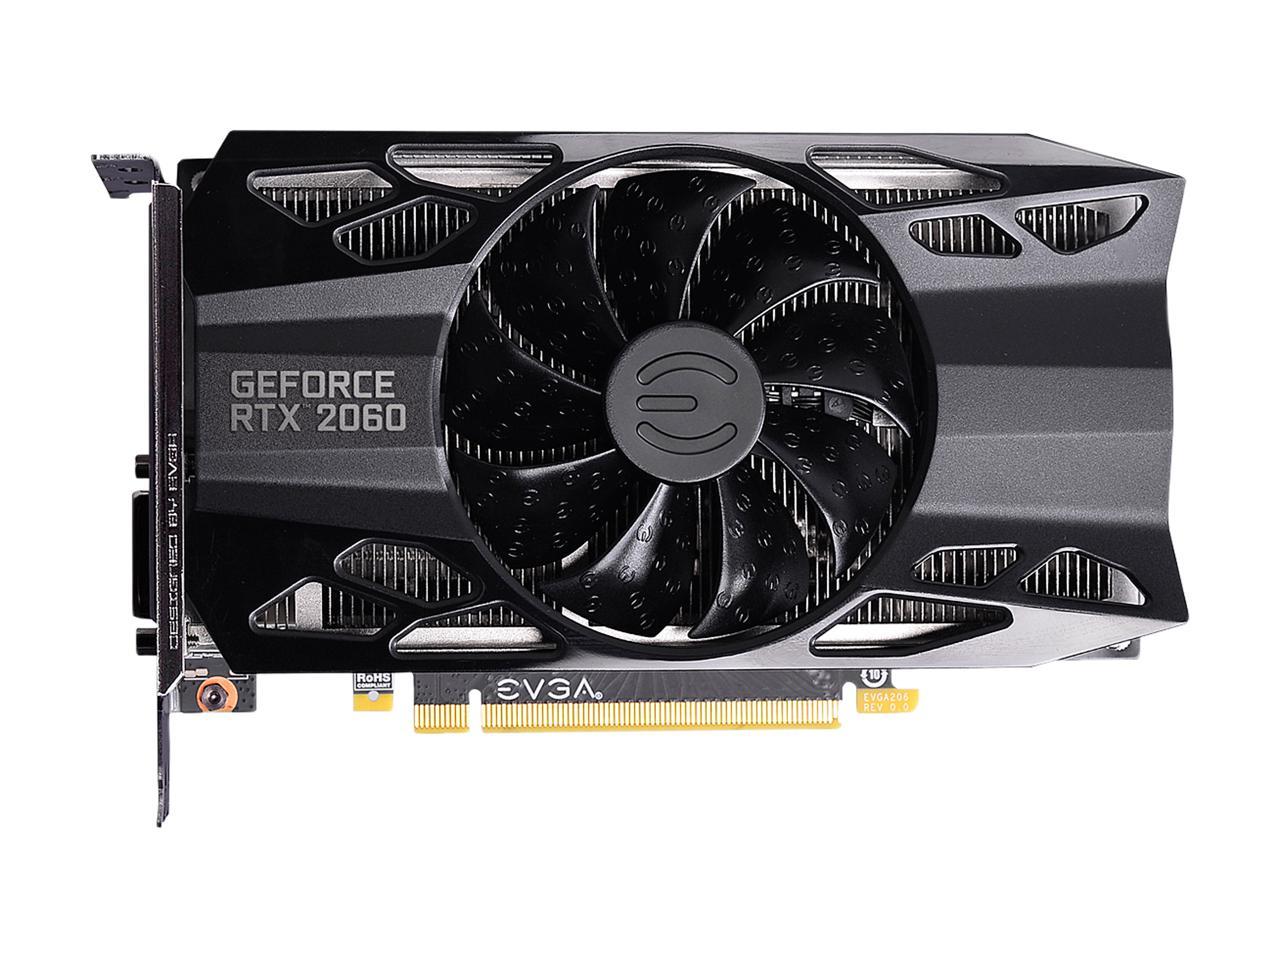 EVGA GeForce RTX 2060 GAMING, 06G-P4-2060-KR, 6GB GDDR6, HDB Fan ...